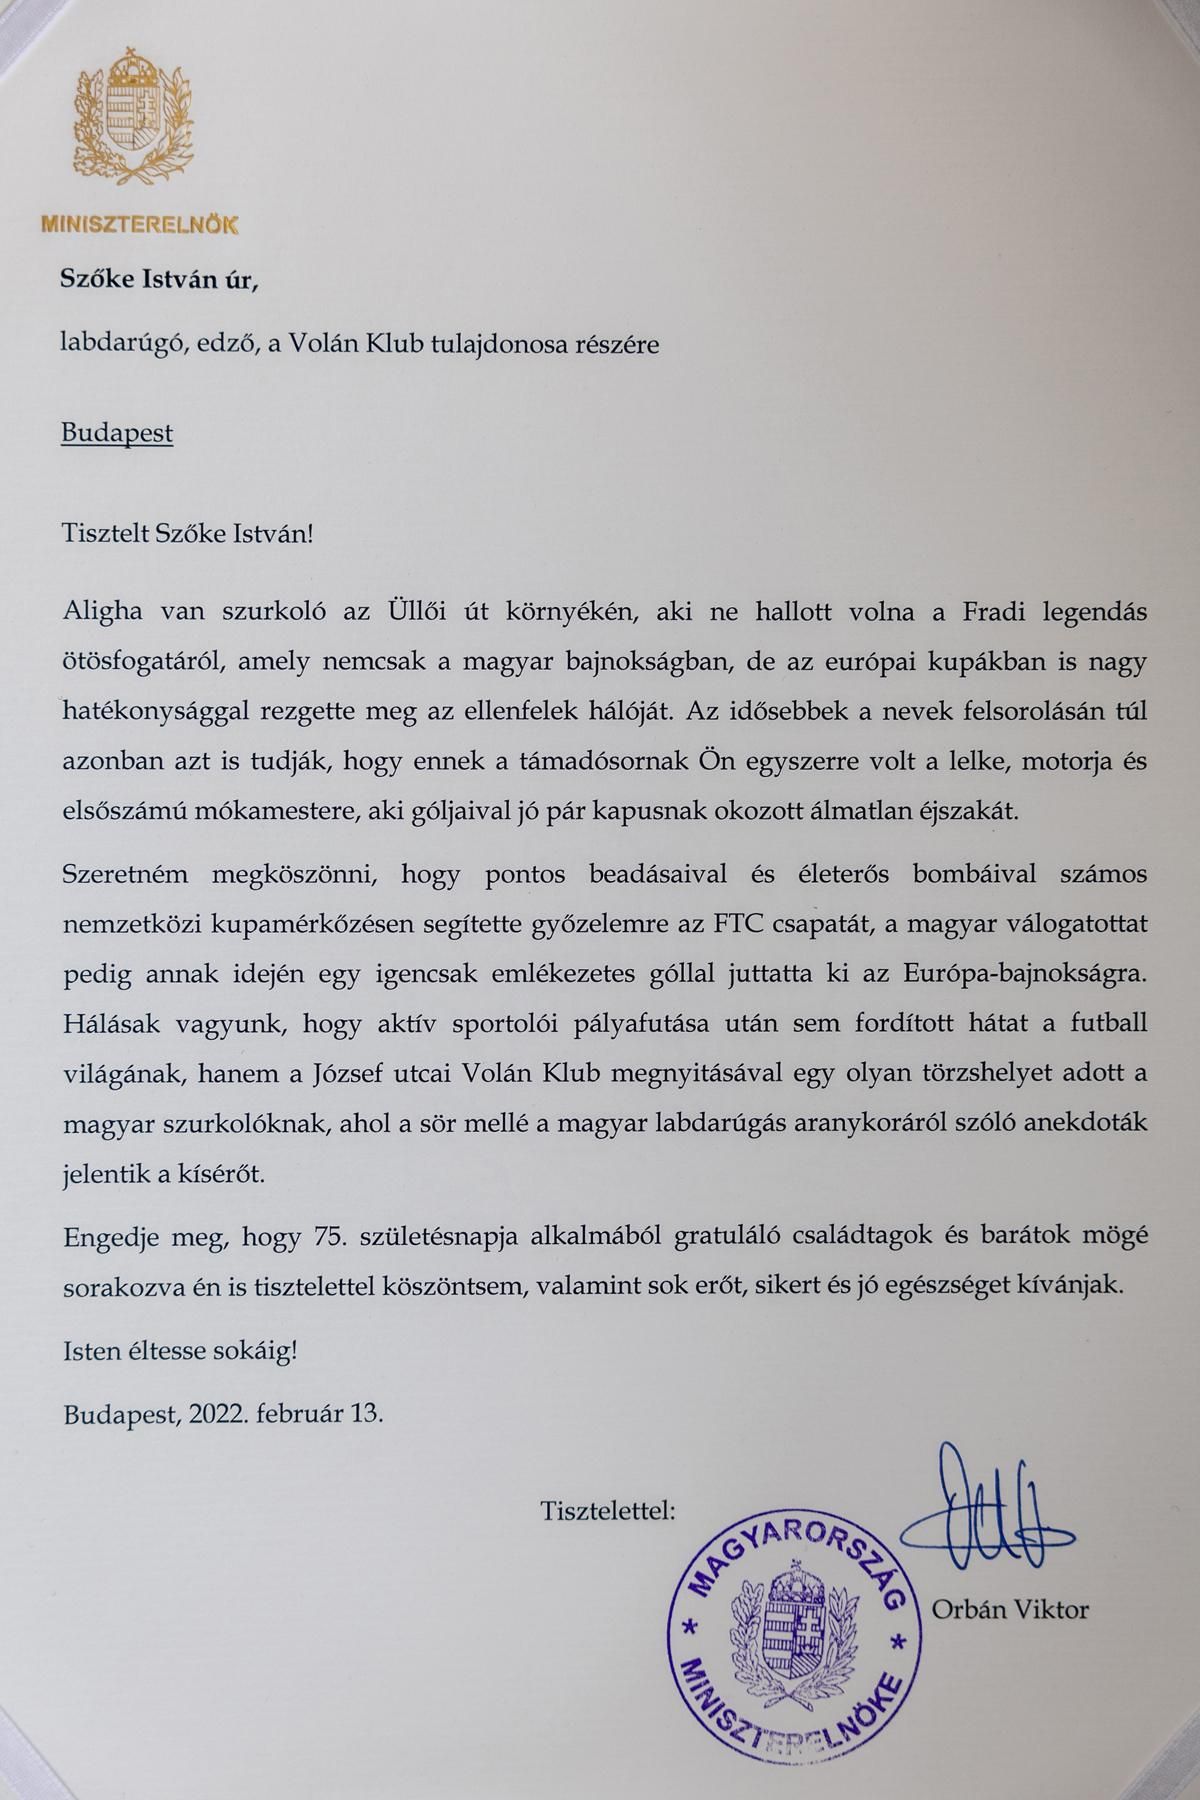 Orbán Viktor levele – a képre kattintva teljes méretben is megtekinthető